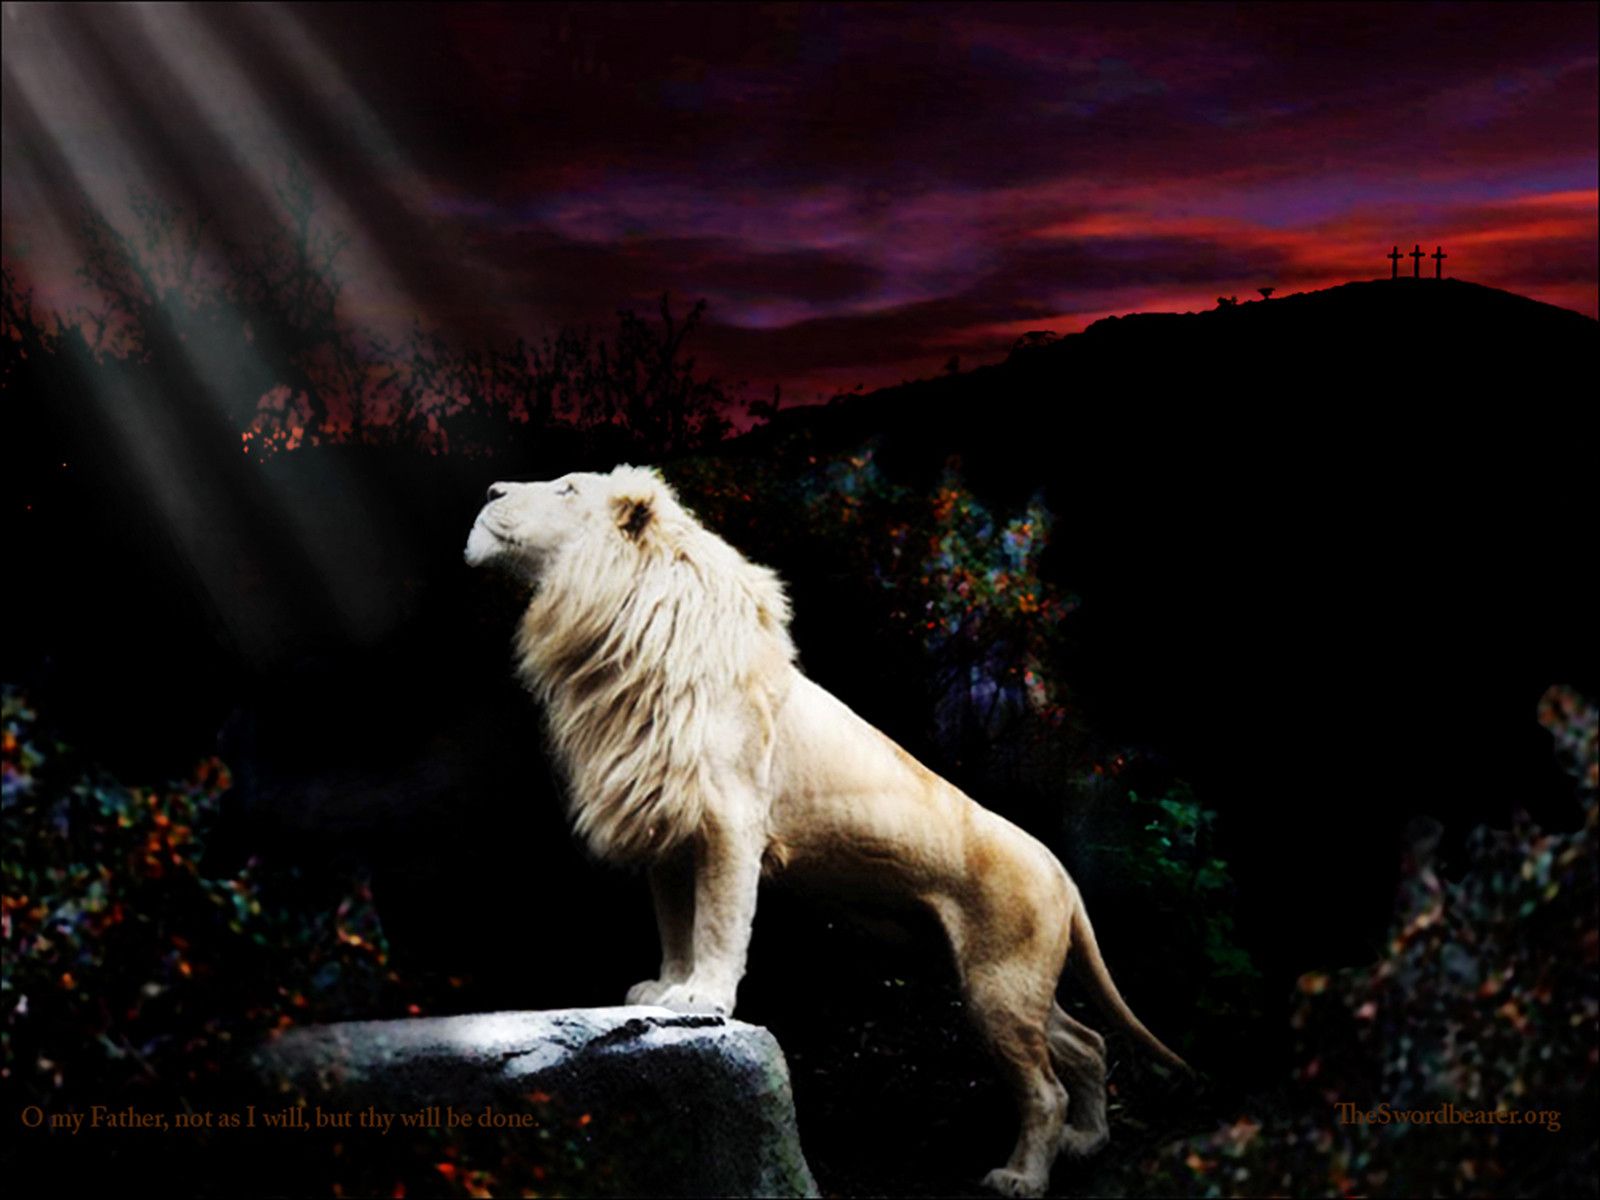 Lion Of Judah Wallpaper